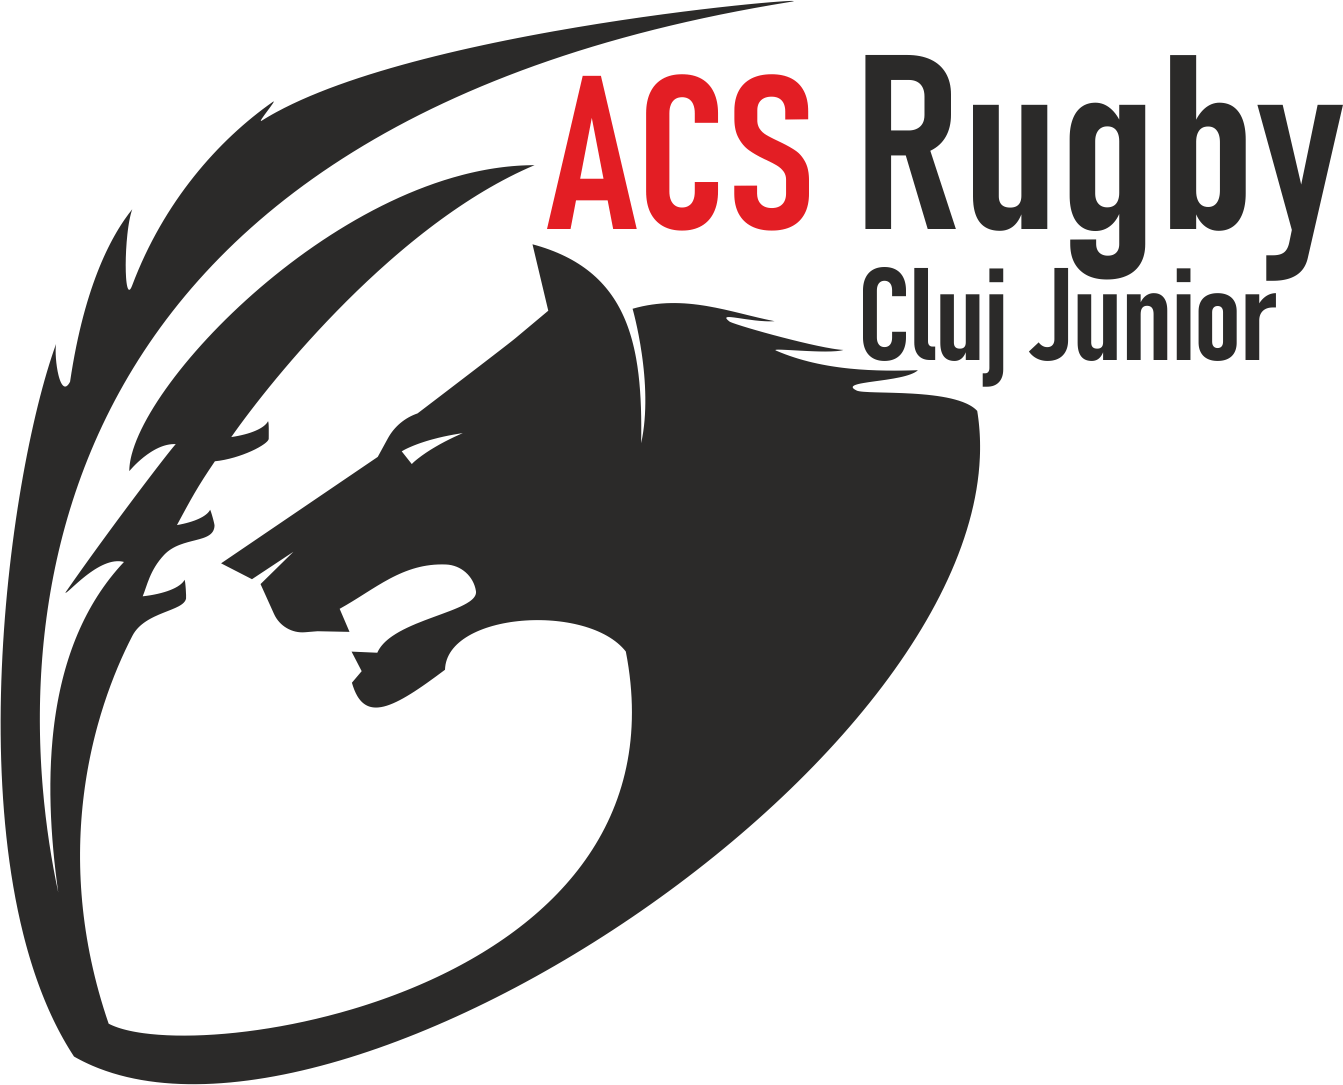 Rugby Cluj Junior  logo